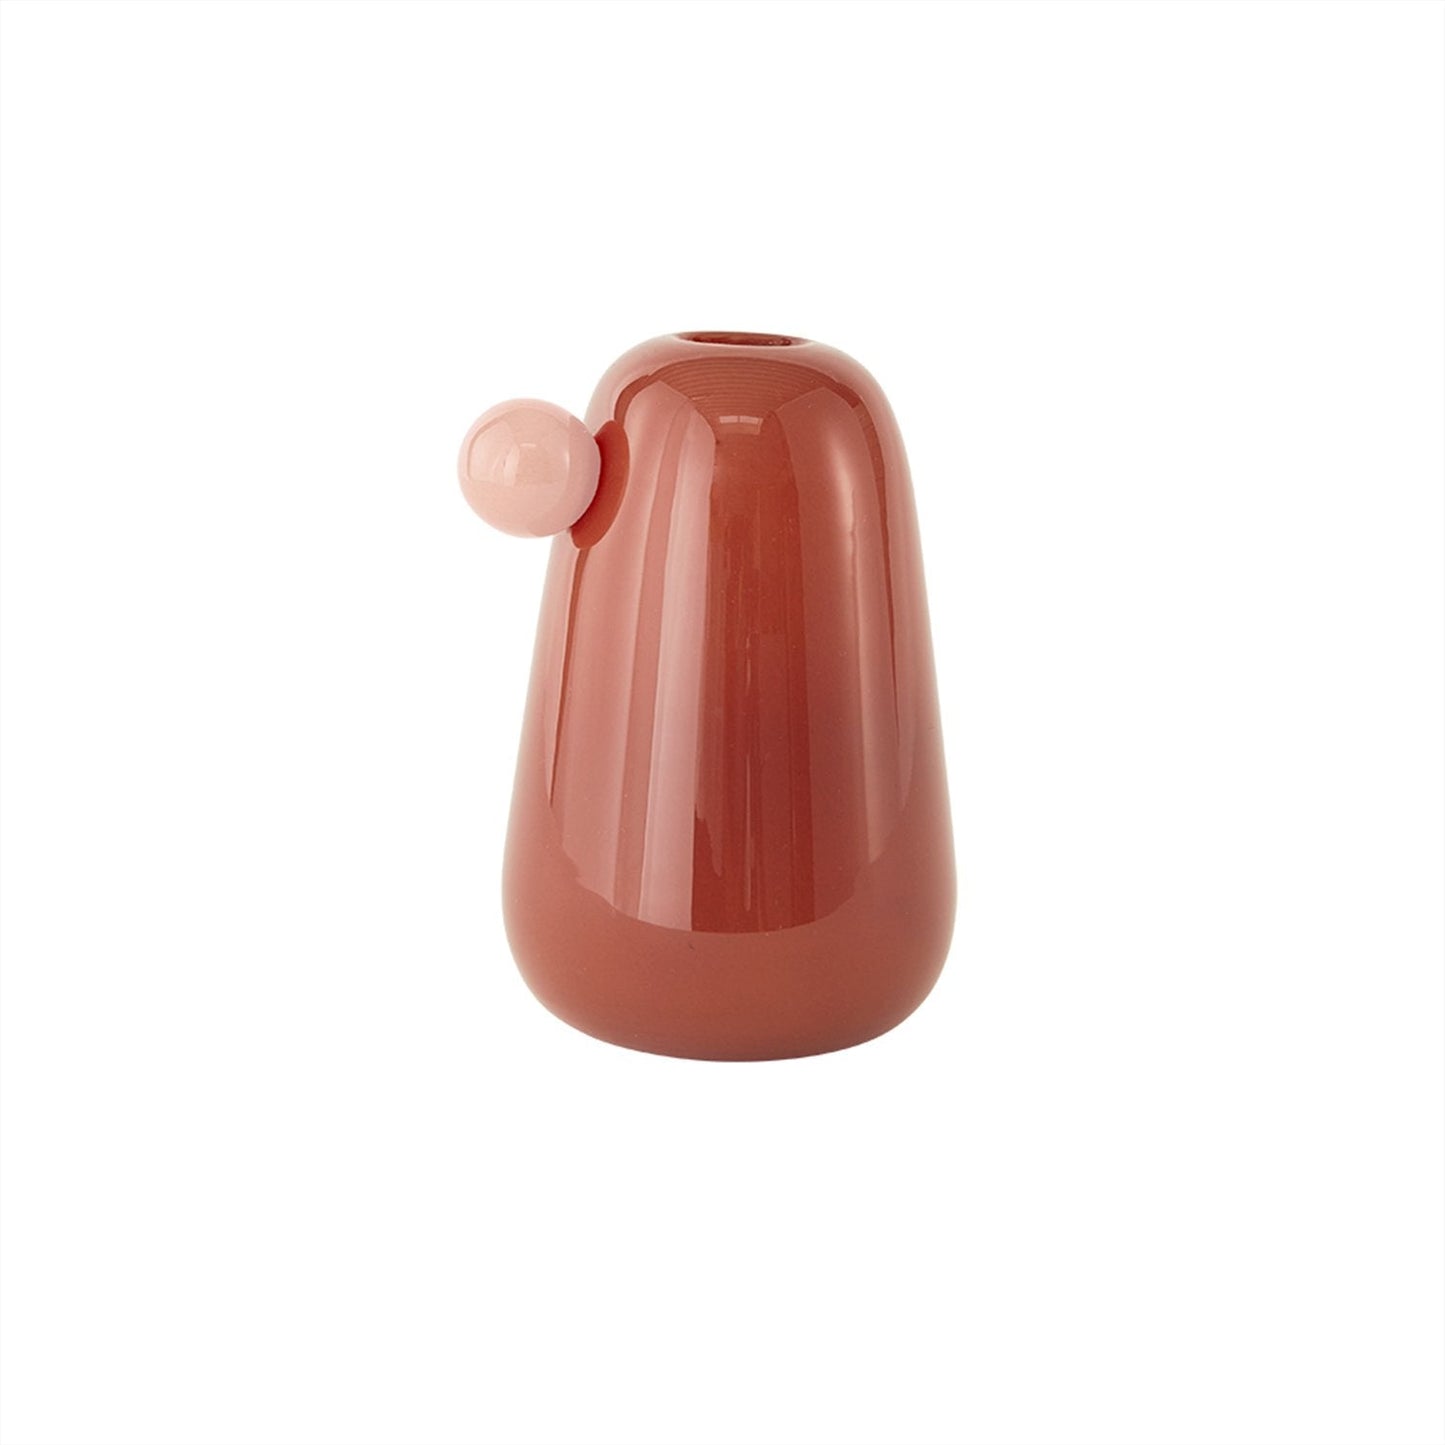 OYOY LIVING Inka Vase - Small Vase 305 Nutmeg